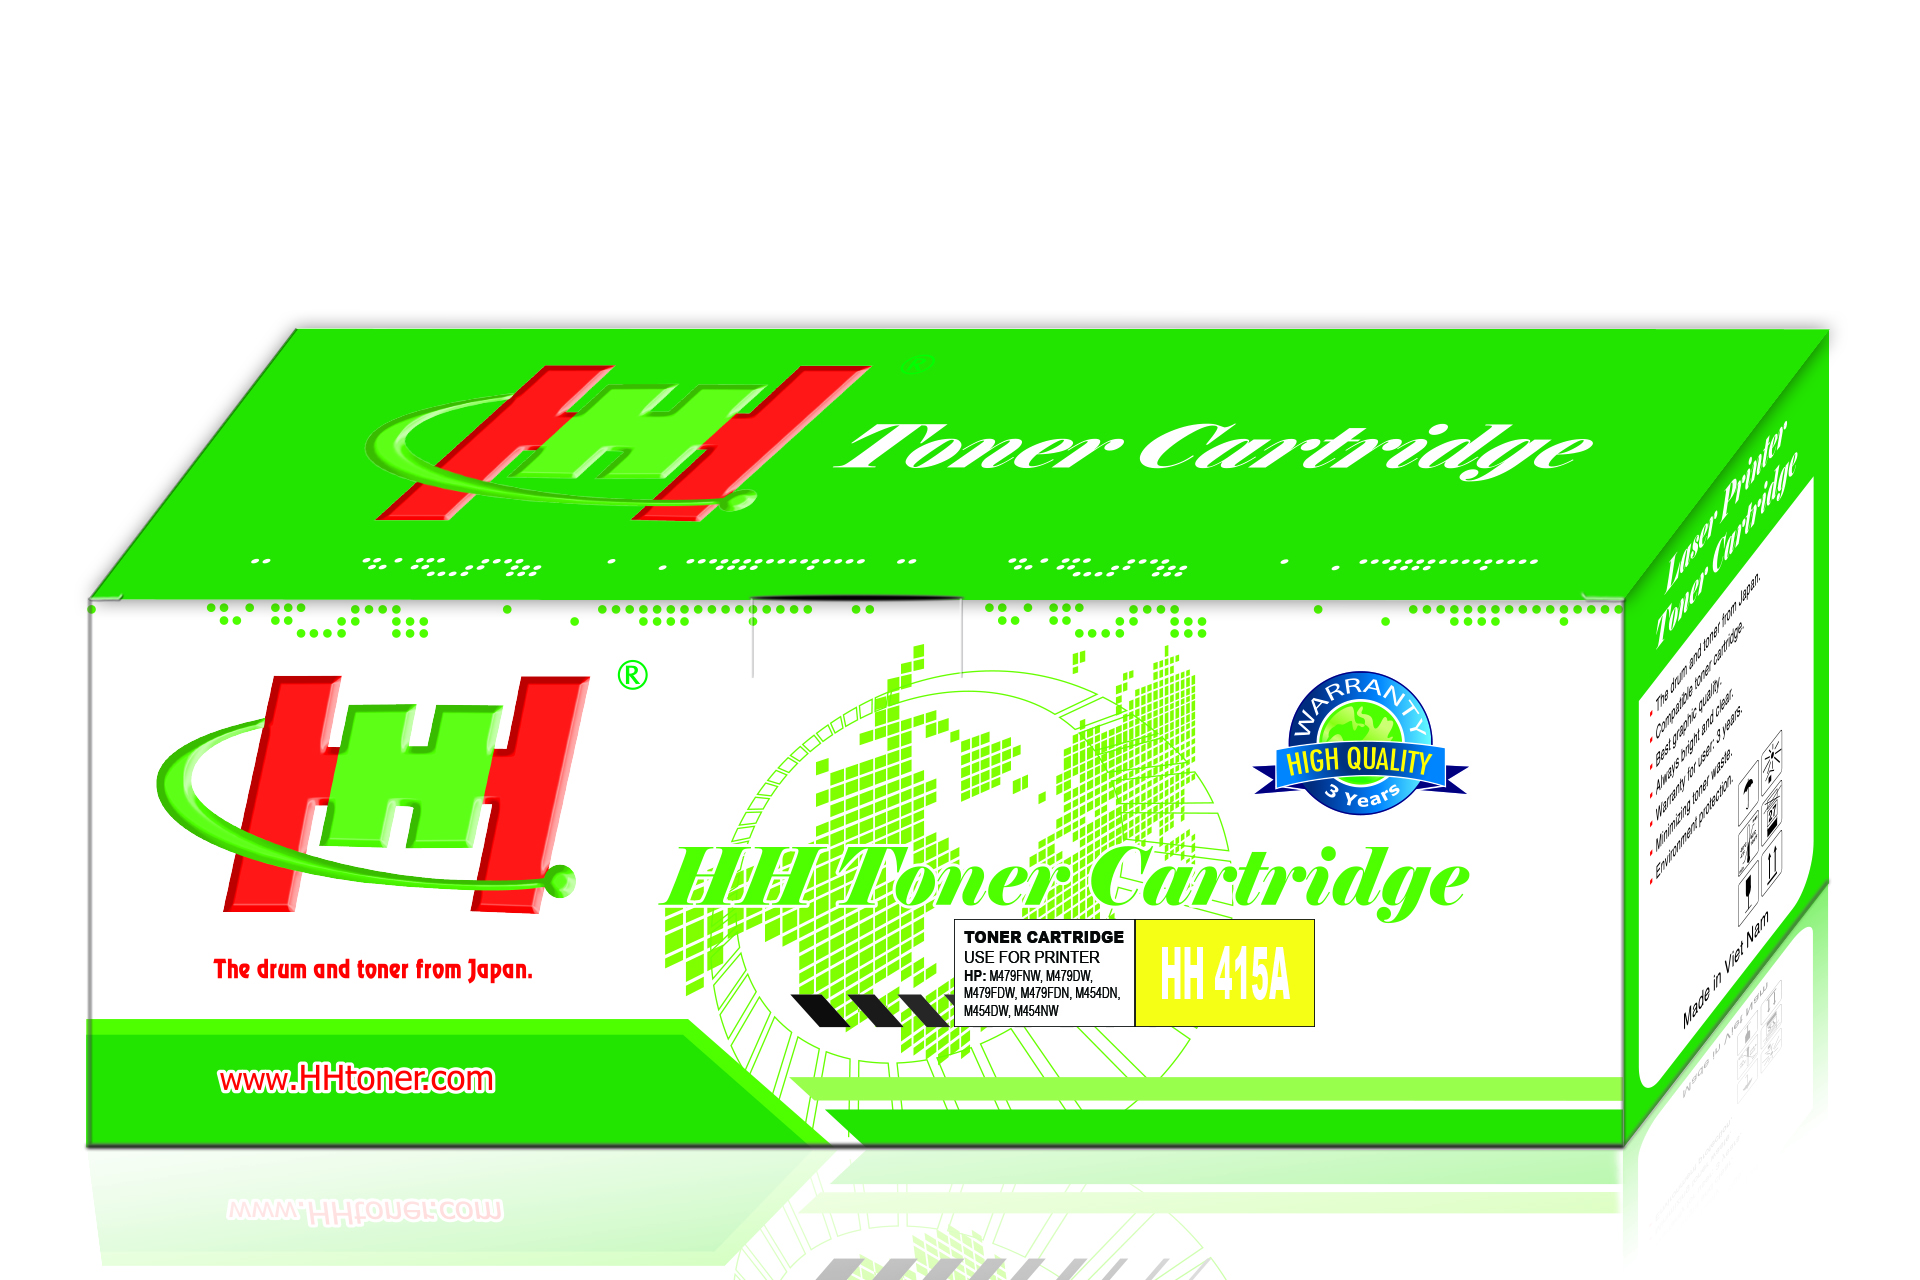 Mực máy in HP Color LaserJet Pro MFP M454 M479 HP 415A Yellow (W2032A) - Thương hiệu HH